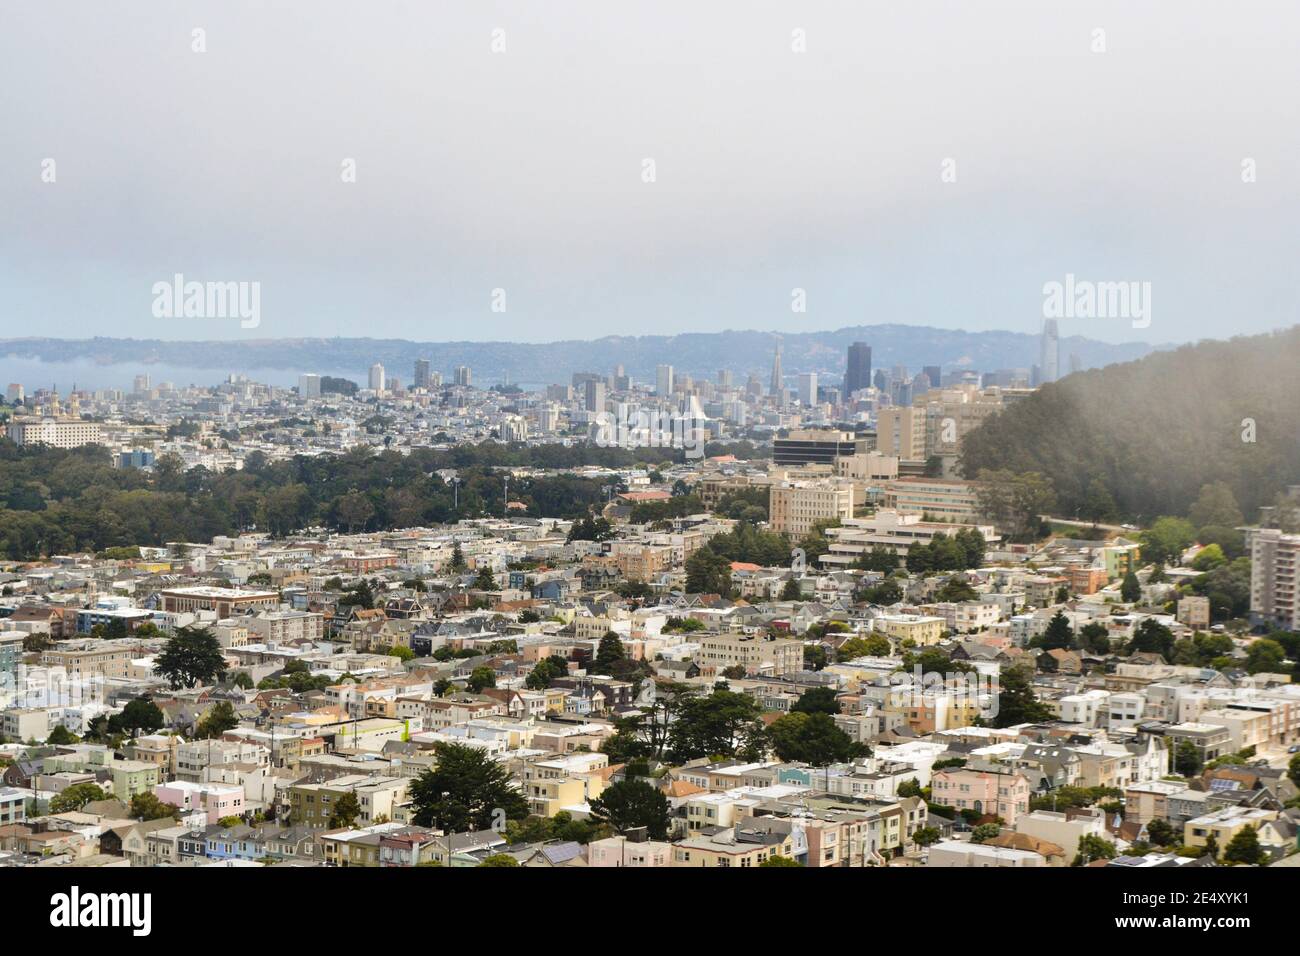 Vista di San Francisco dal Grandview Park Inner Sunset, California, che mostra case residenziali e parchi, con il mare e il paesaggio urbano in lontananza Foto Stock